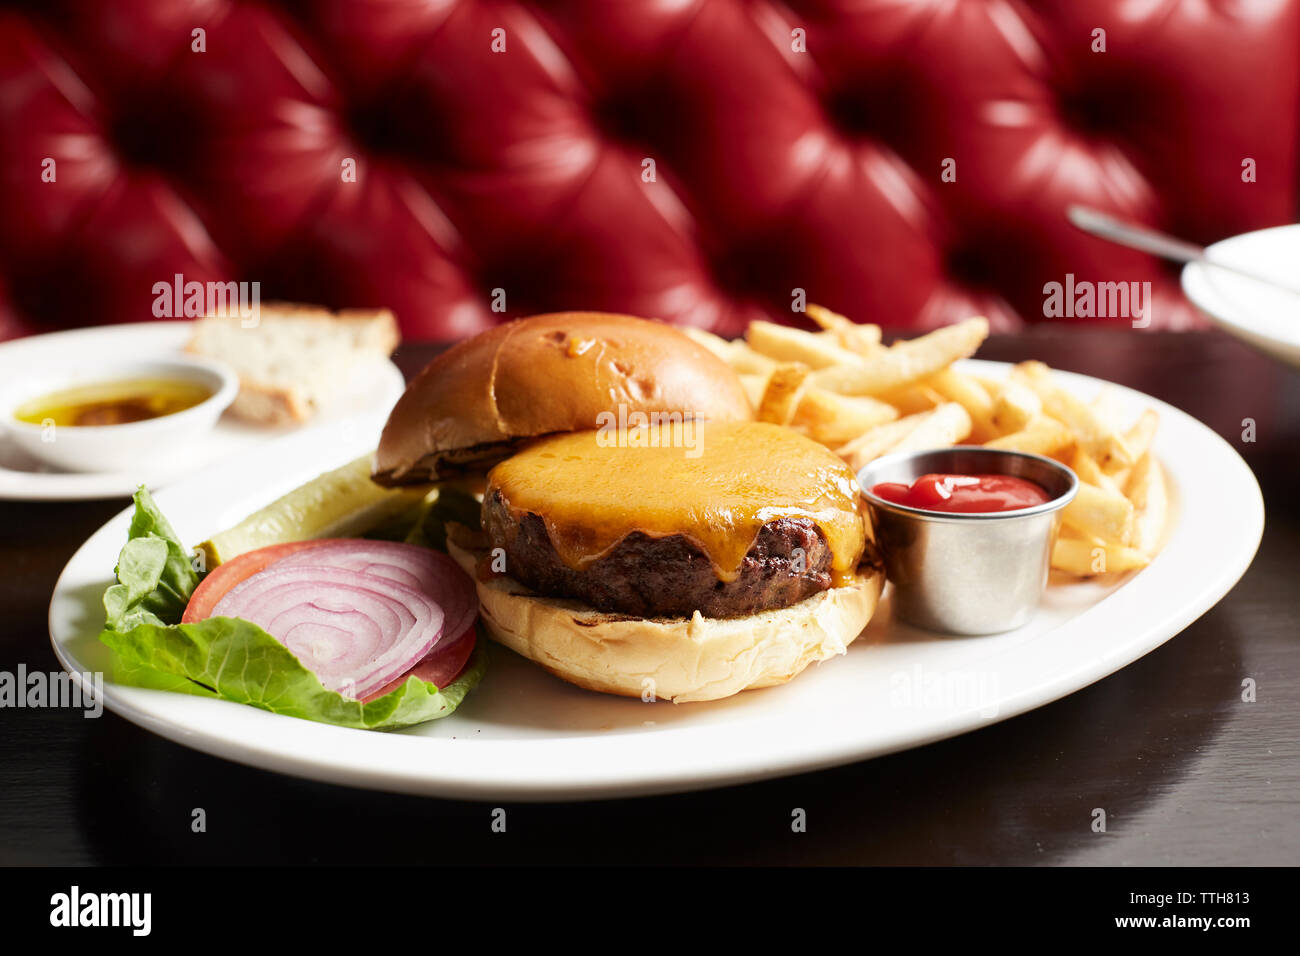 In der Nähe von Cheeseburger mit Pommes Frites auf Teller am Tisch Stockfoto